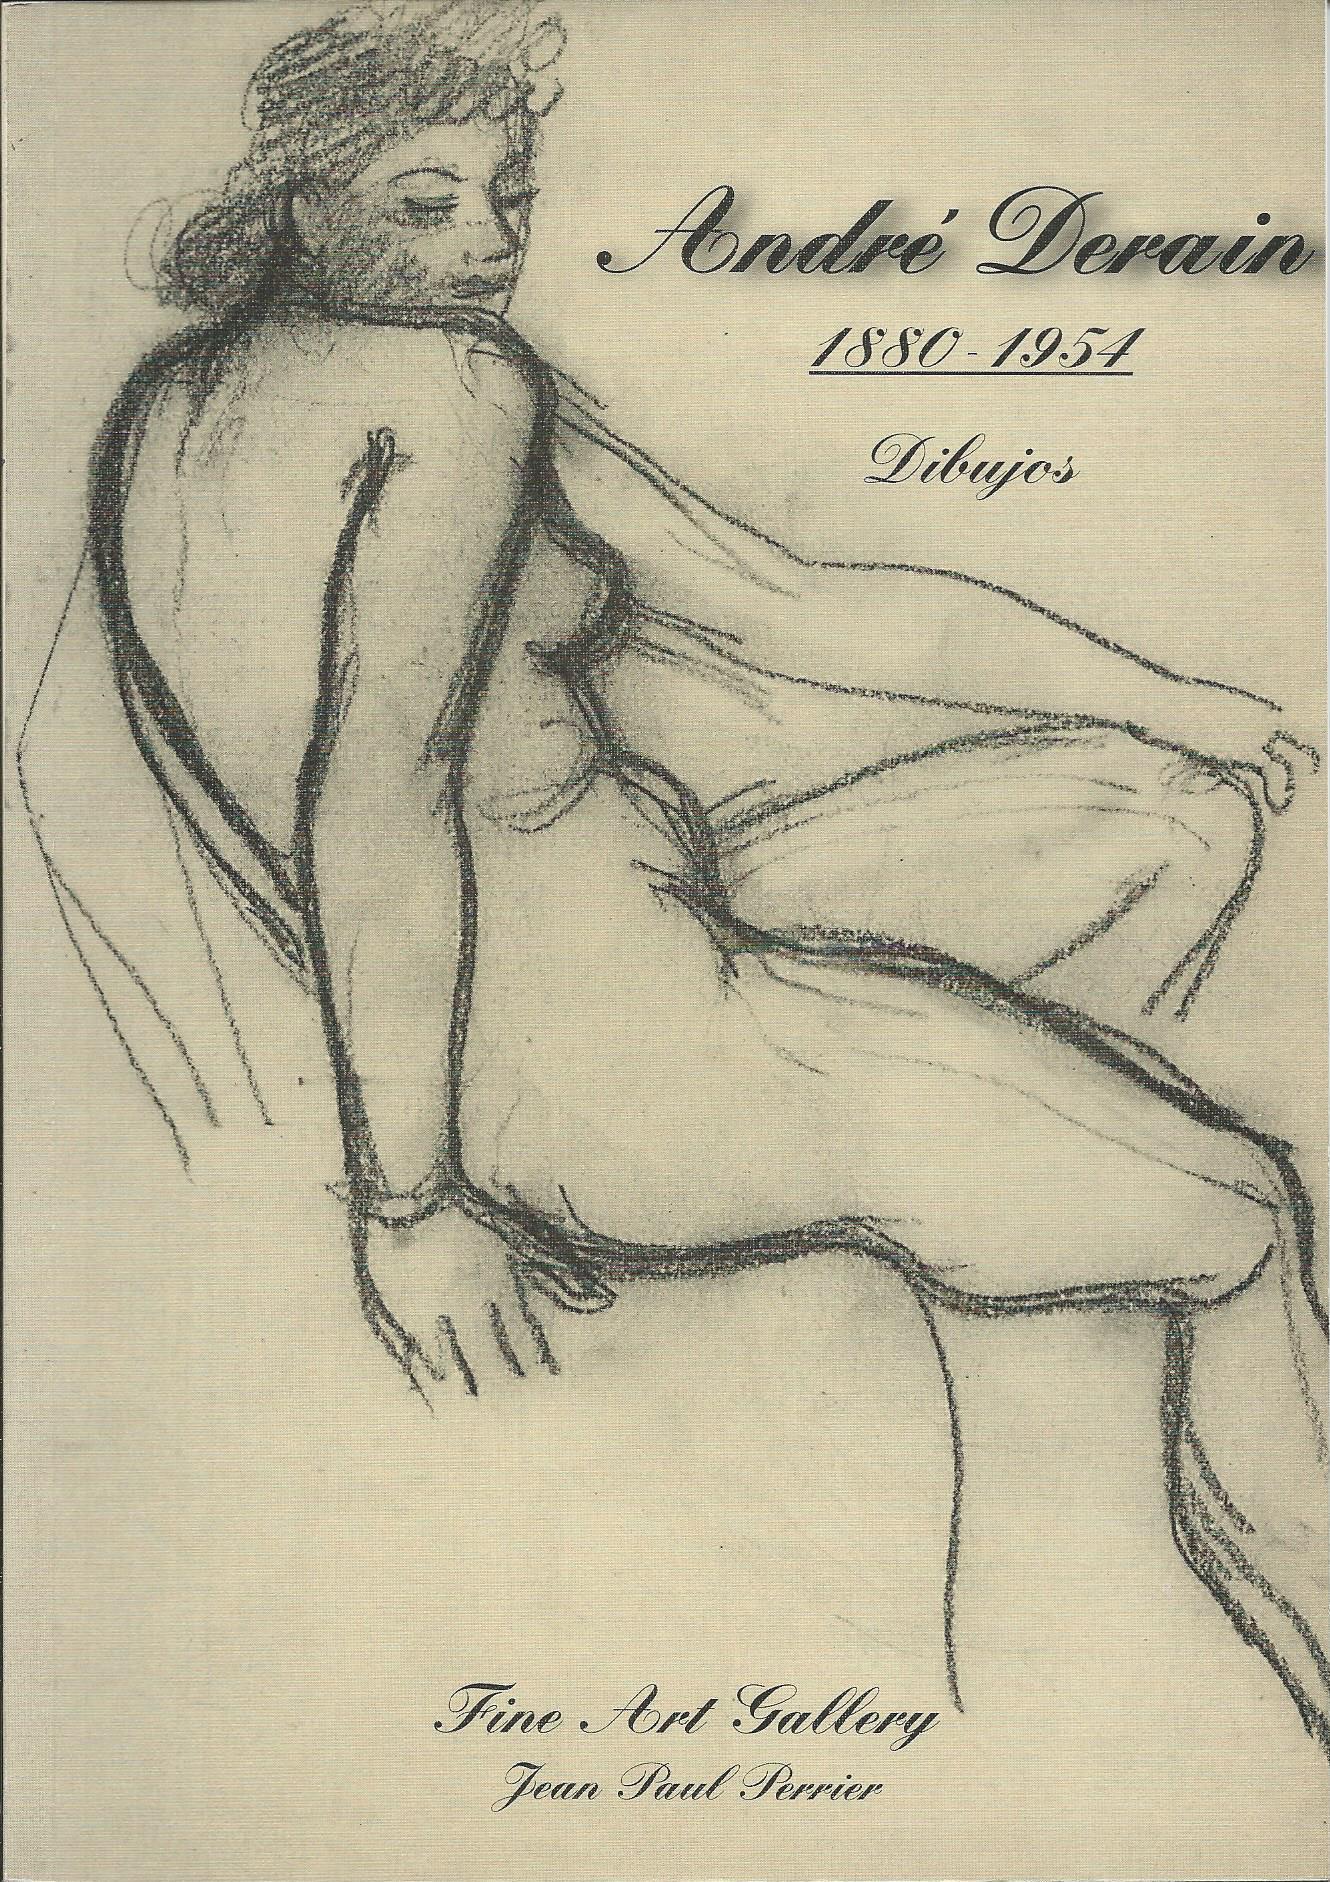  visage de profil. dessin original au crayon peinture
André Derain (Chatou, 10 juin 1880-Garches, 8 septembre 1954) est un peintre, illustrateur et scénographe français, représentant du fauvisme.

Derain a dix-huit ans lorsqu'il entre à l'Académie